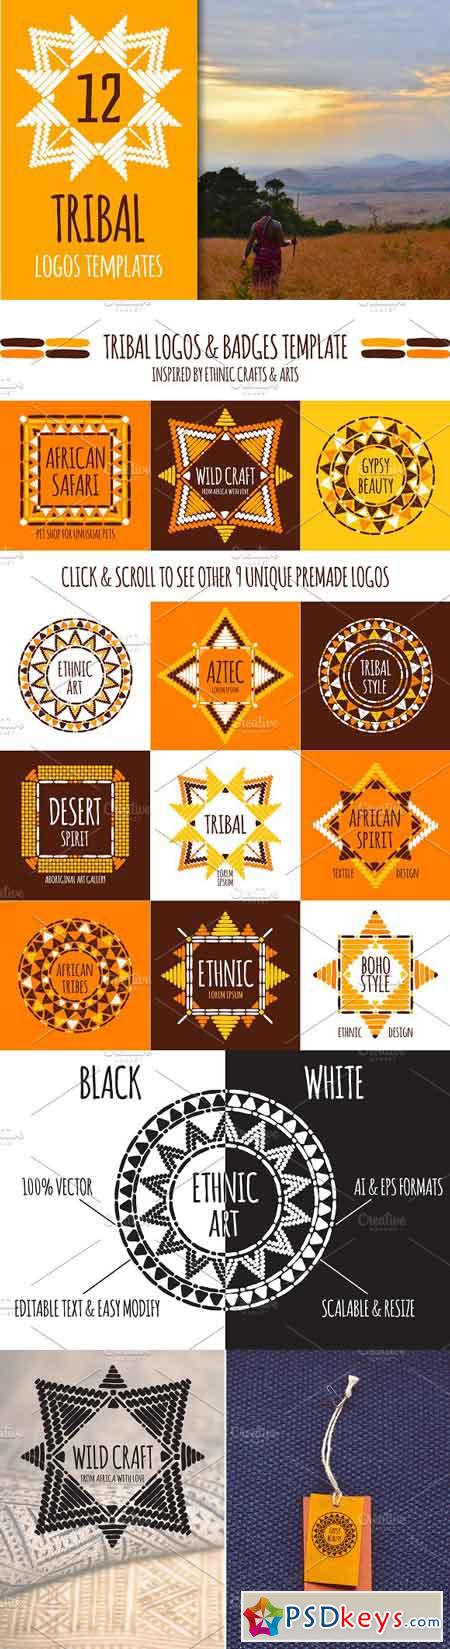 Tribal logos templates 1358188